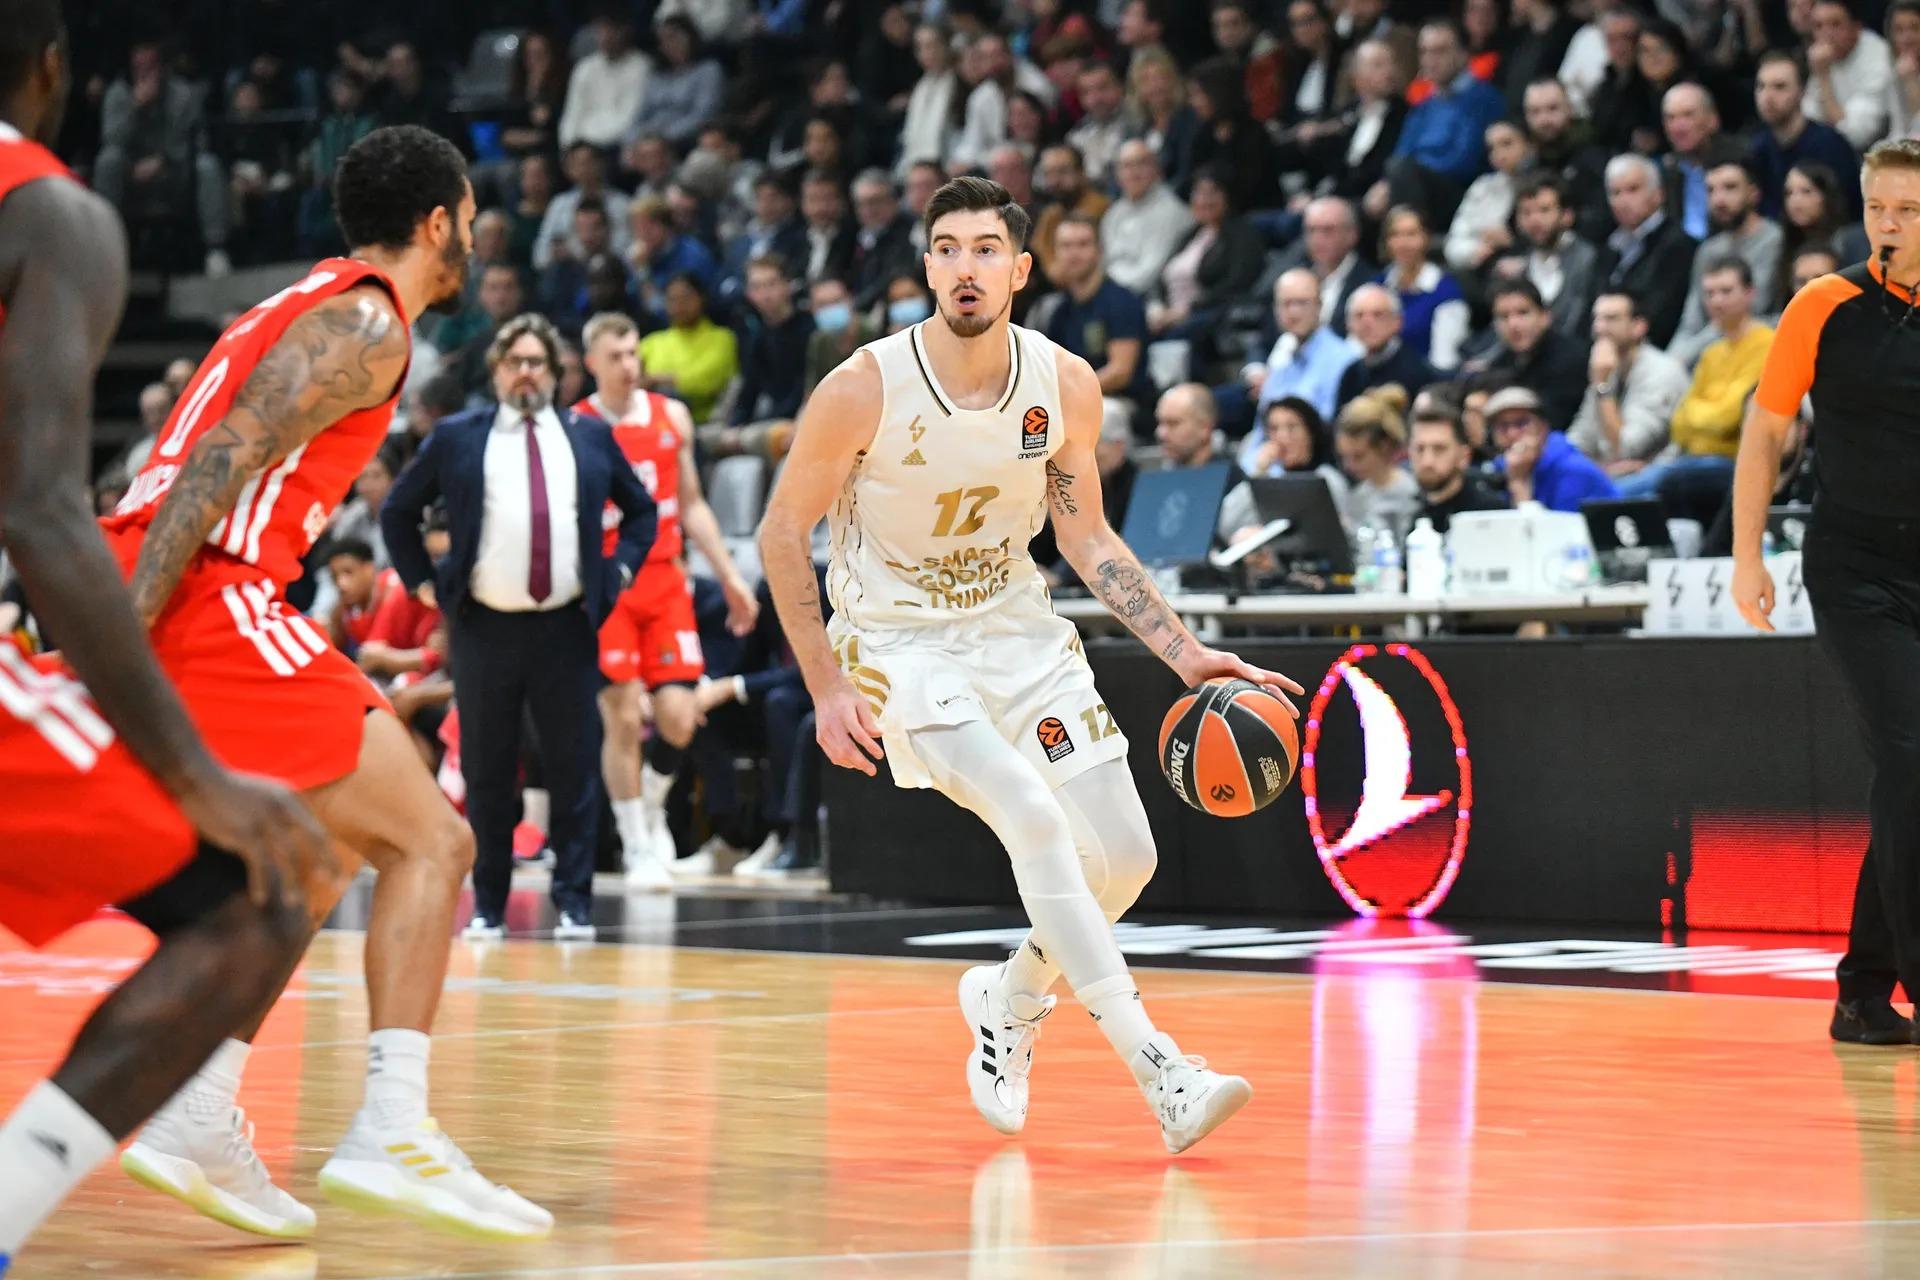 [Vidéo] Le sujet de l’EuroLeague sur Nando De Colo